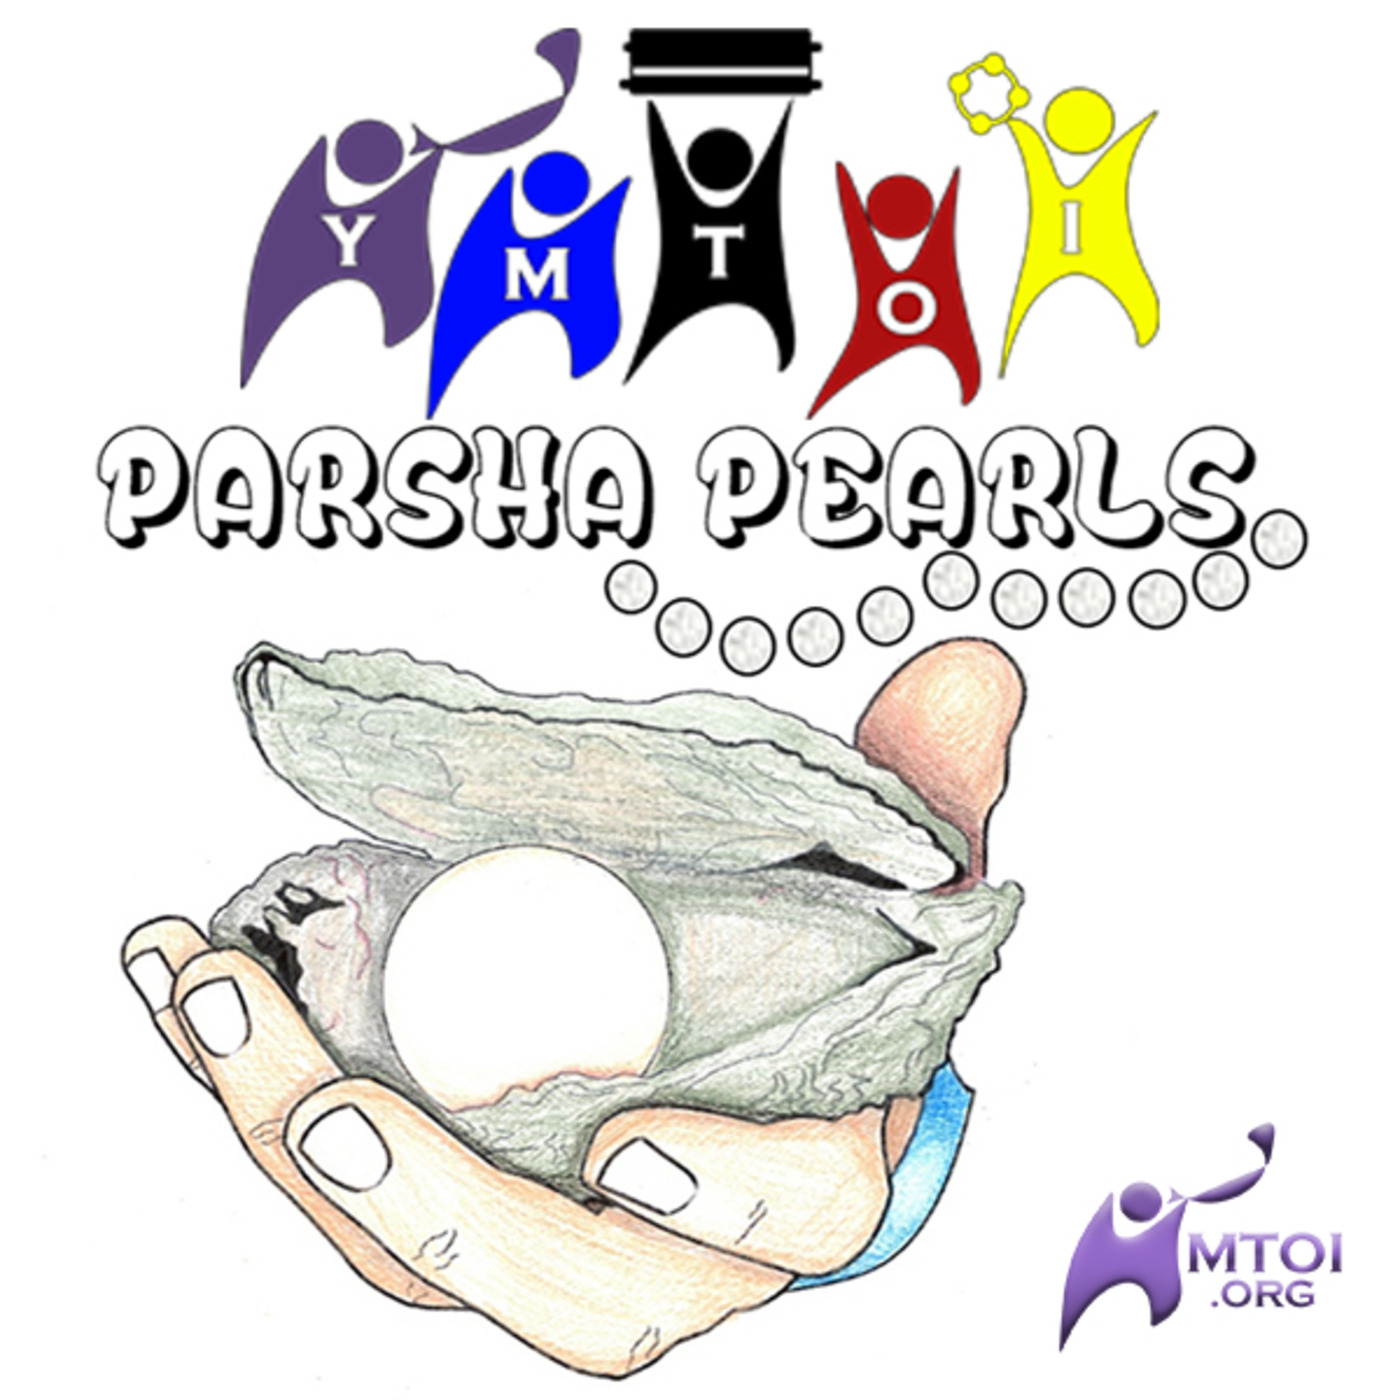 YMTOI Parsha Pearls 9.2 Vayeishev - Yoseph, Yoseph